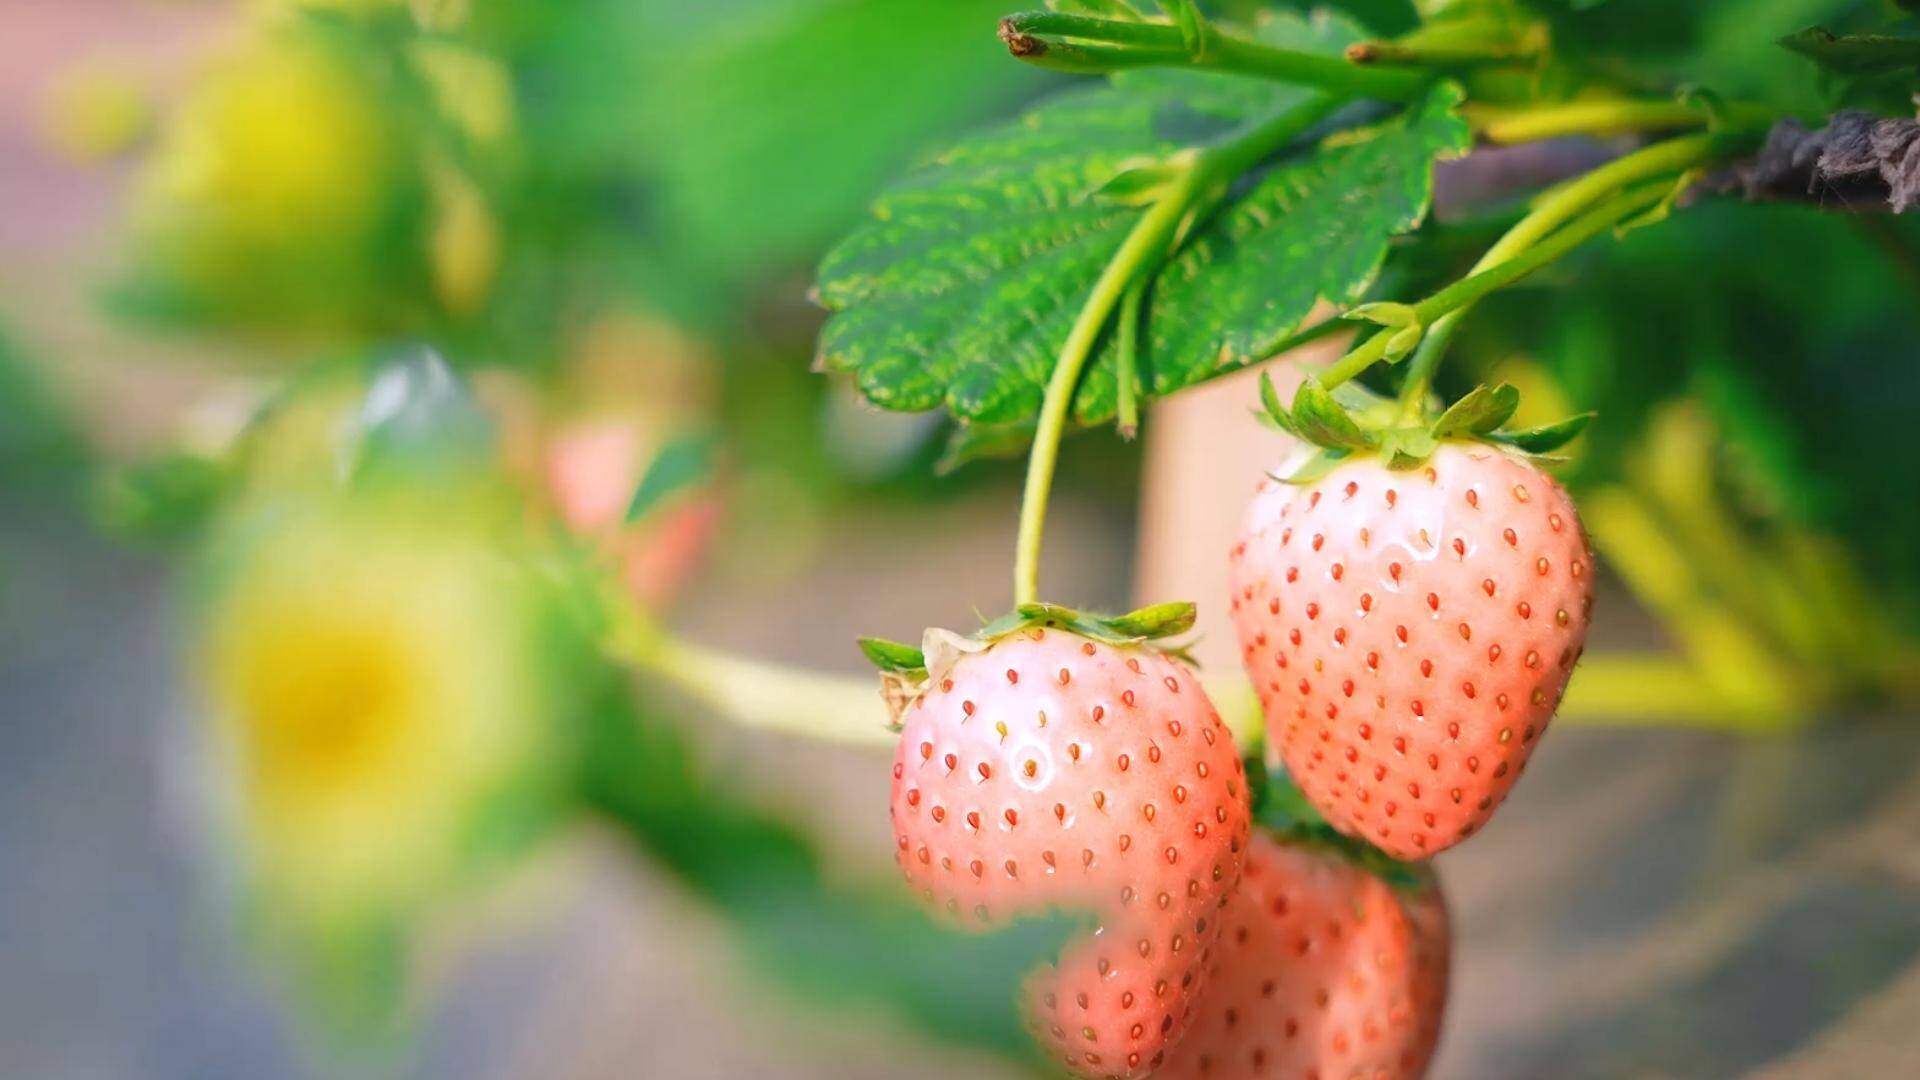 正研发草莓新品种“黑珍珠” 山东首个草莓盒马村落地济南